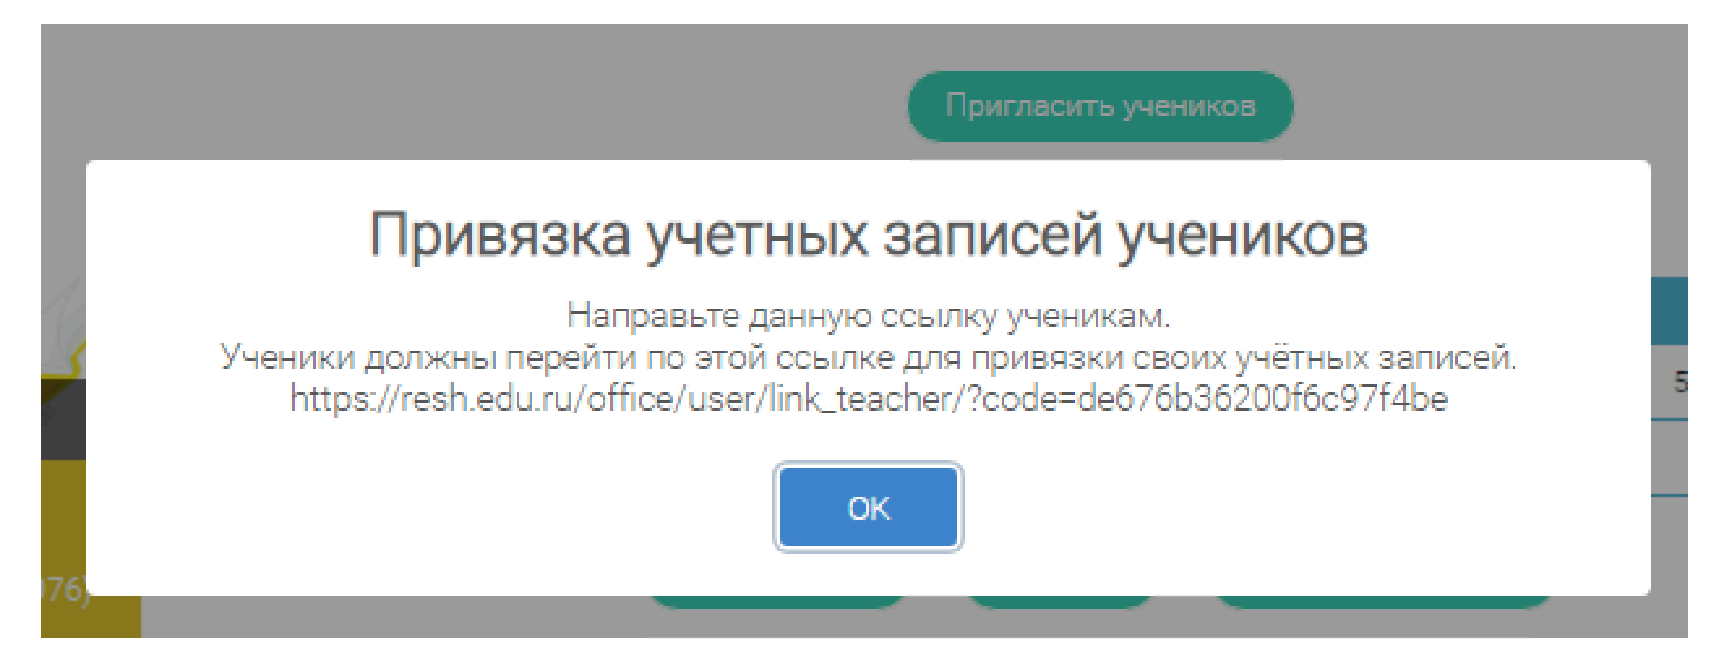 Рэш российская электронная школа регистрация учителя